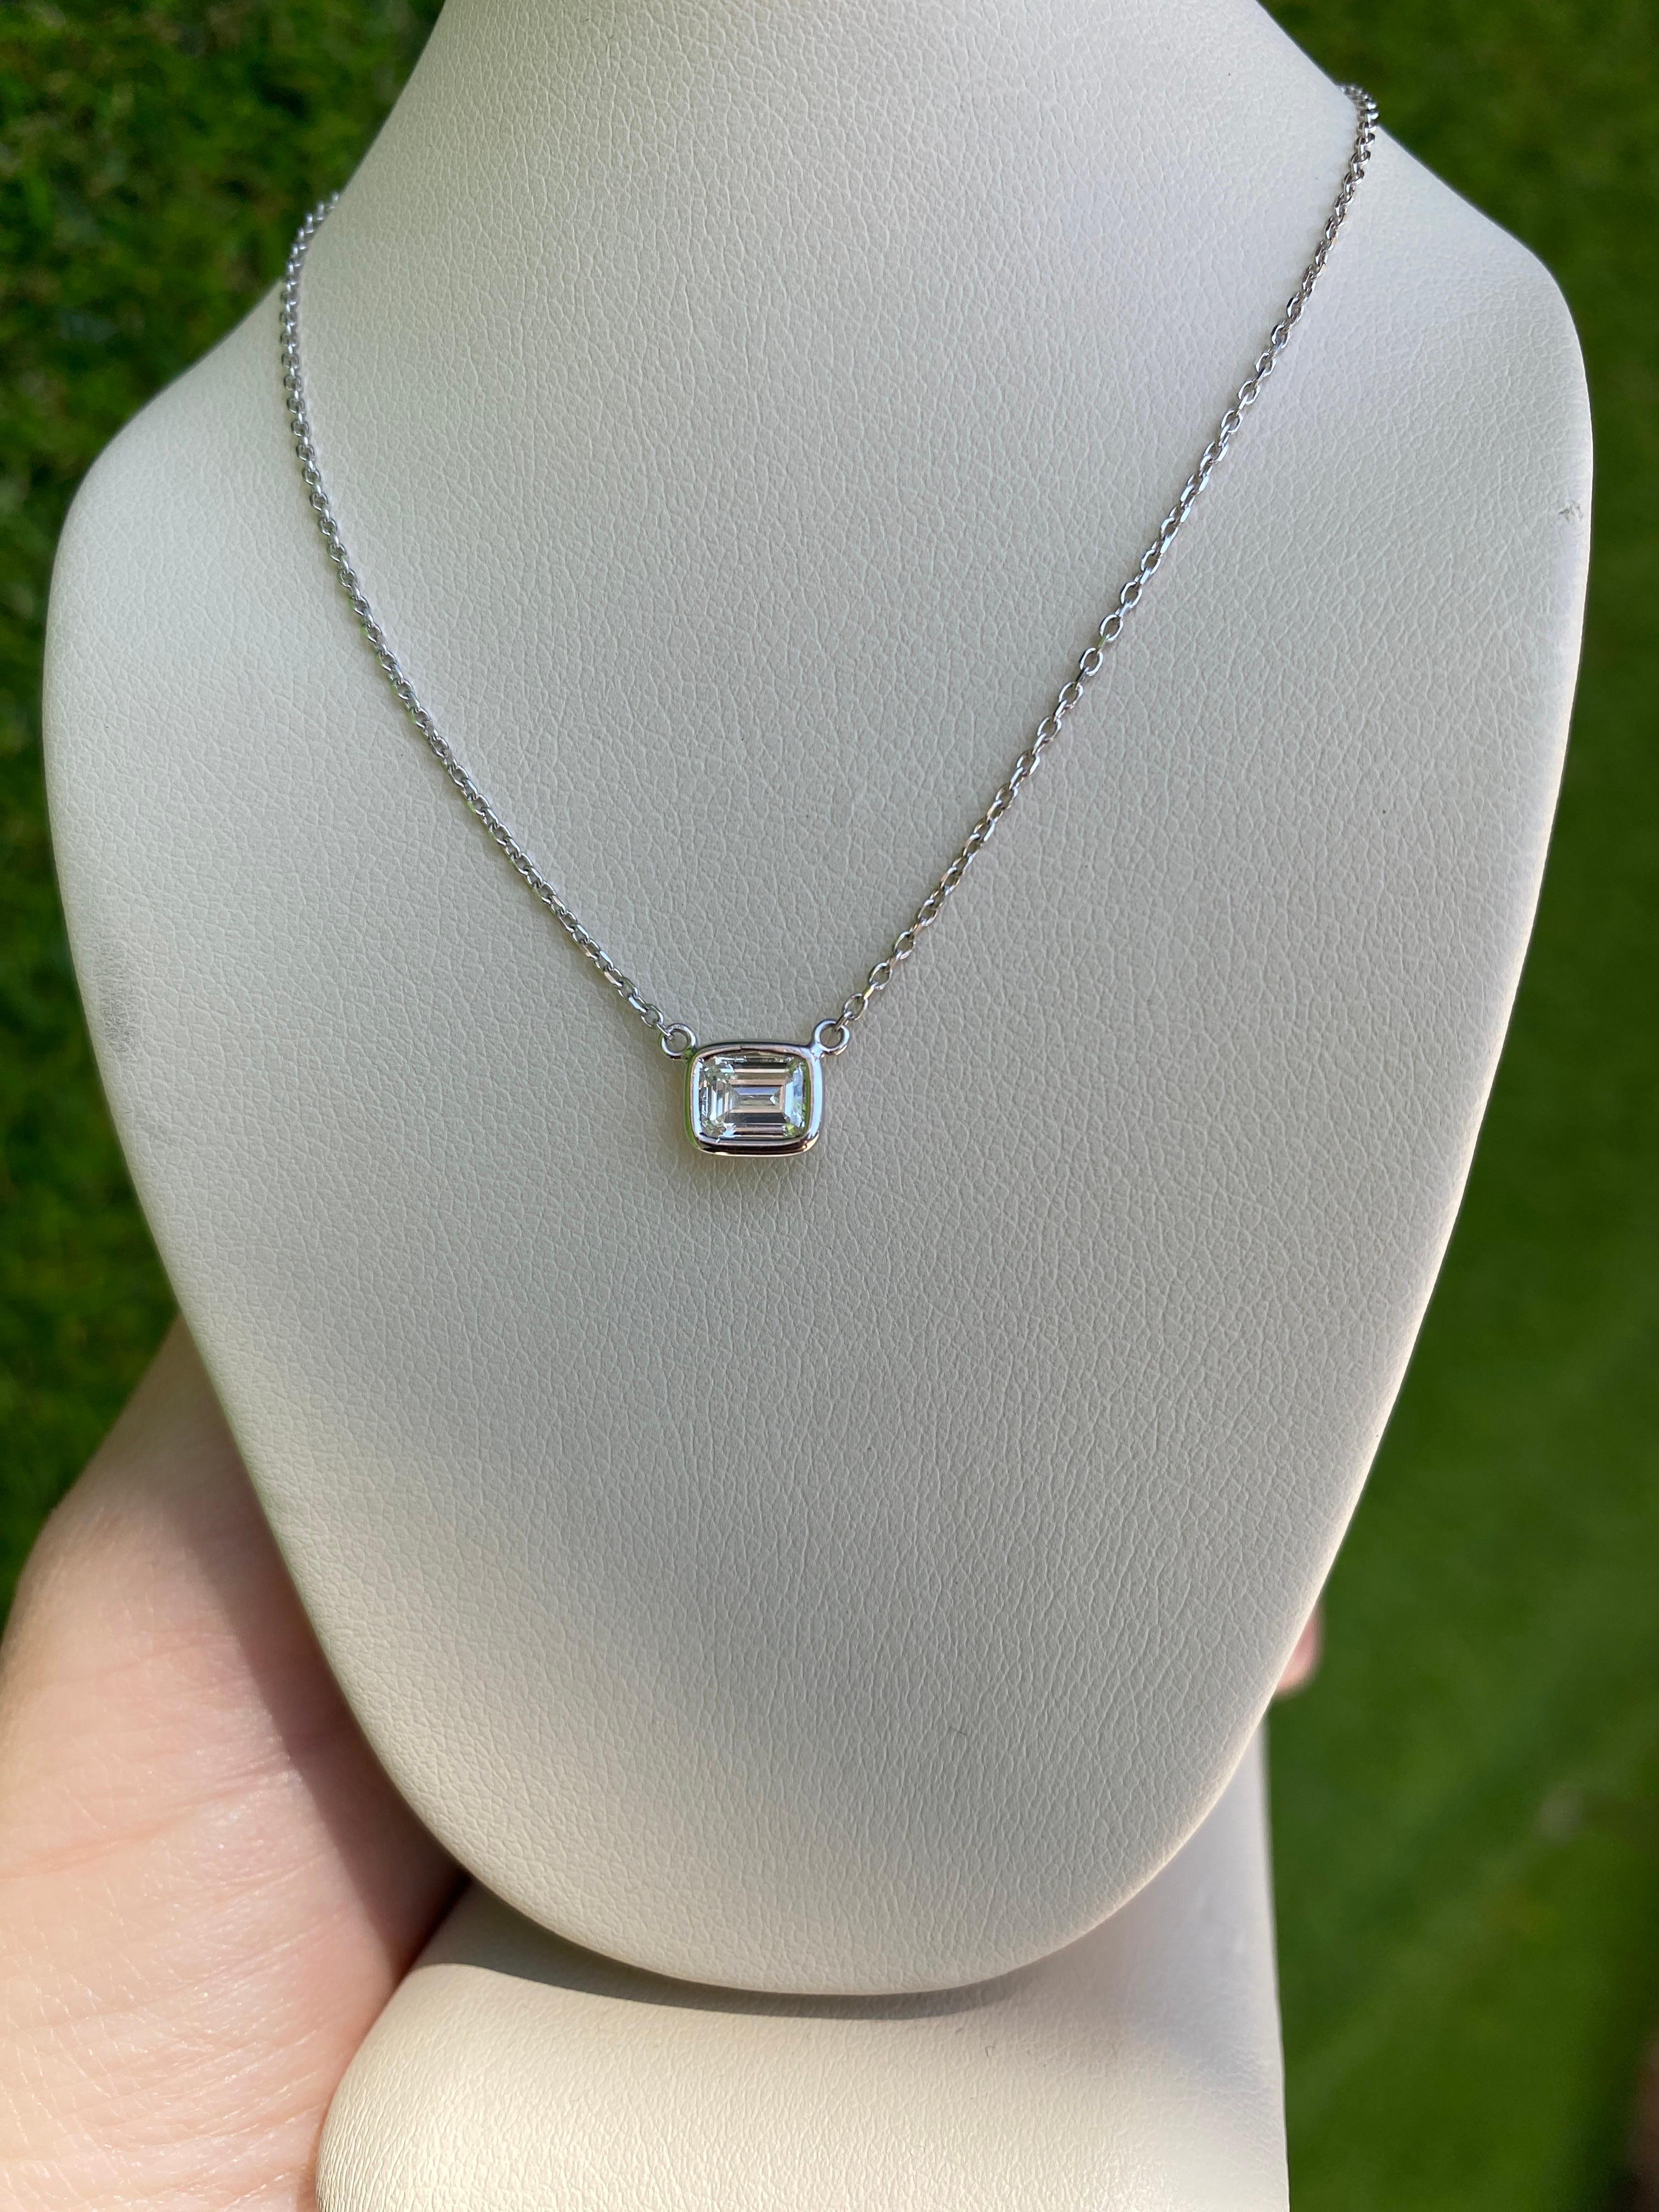 0.44 Carat Natural Emerald Cut Bezel Set Diamond Pendant Necklace 14k White Gold For Sale 8